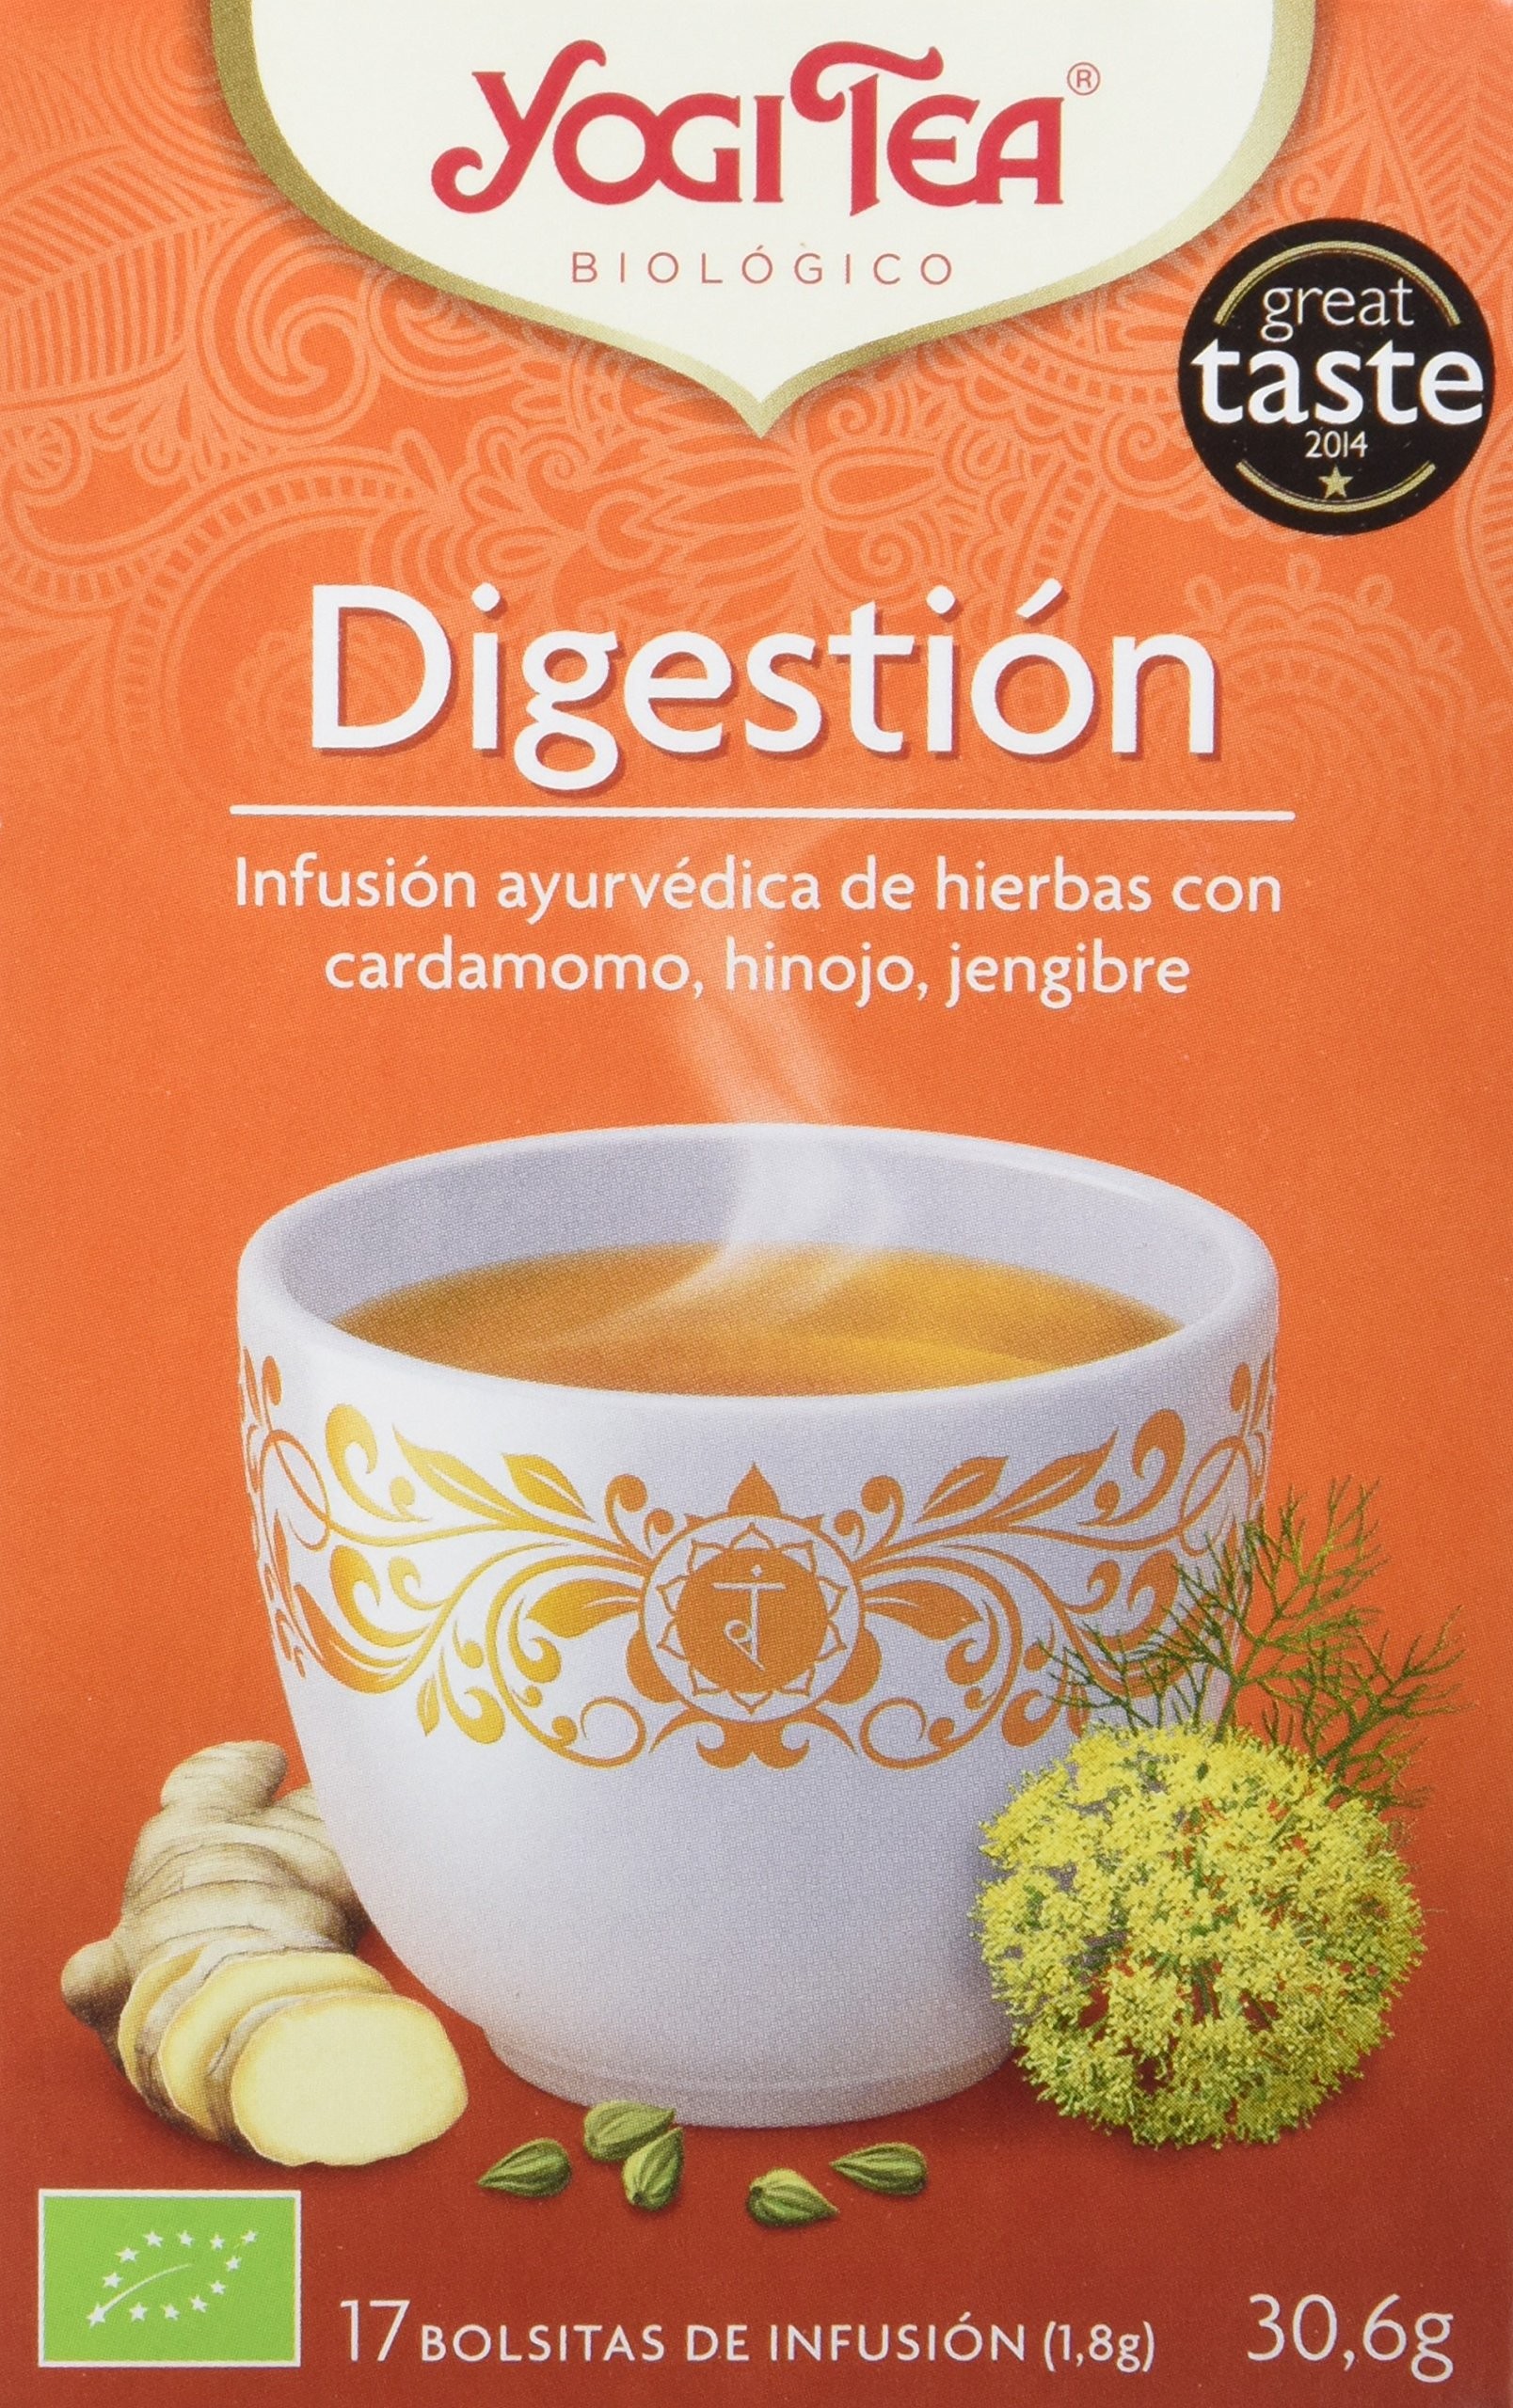 YOGI TEA® Digestion